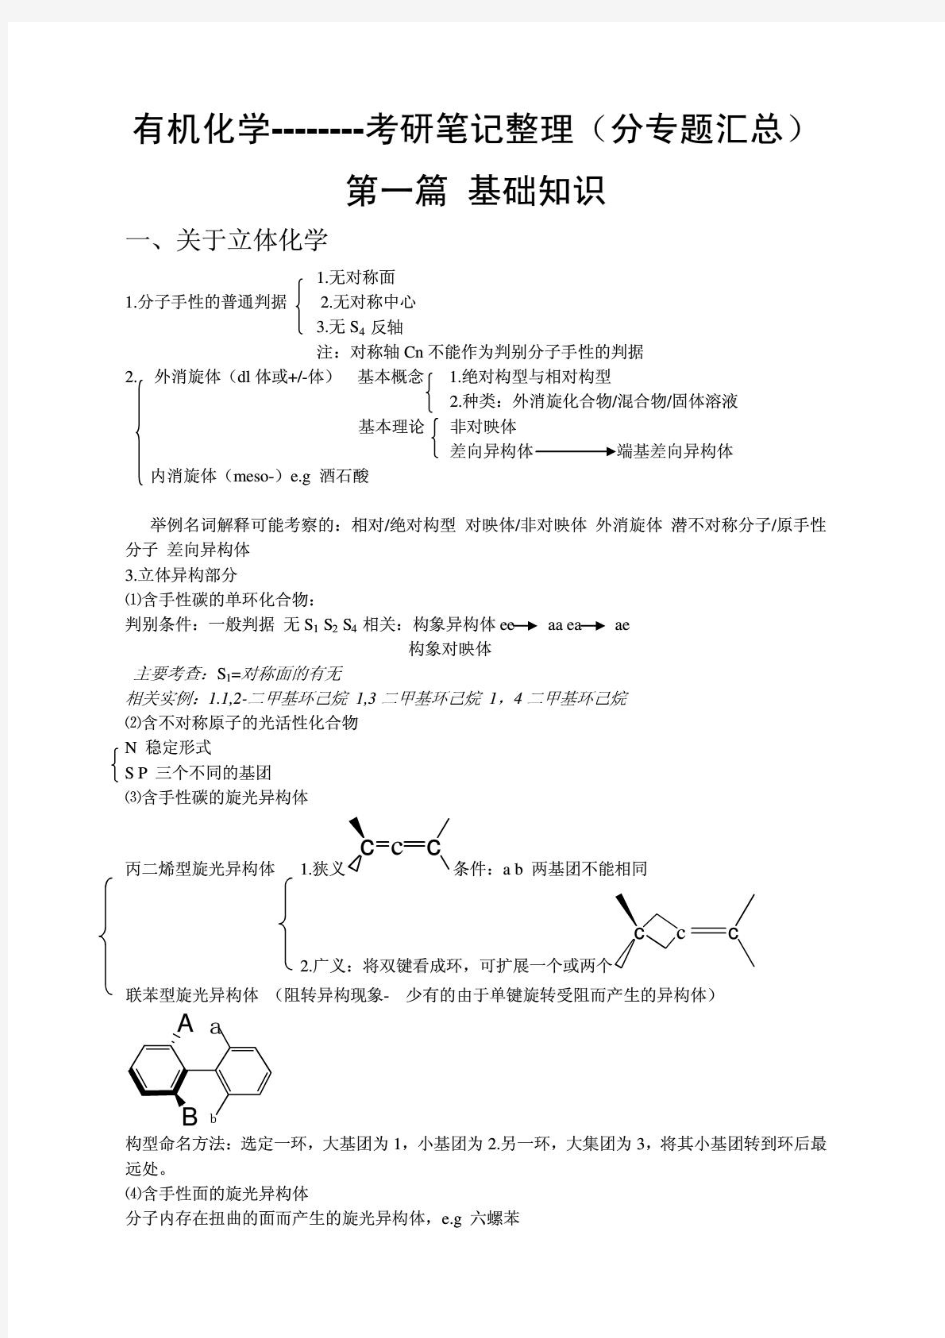 北京大学-有机化学考研复习笔记整理(分专题汇总)